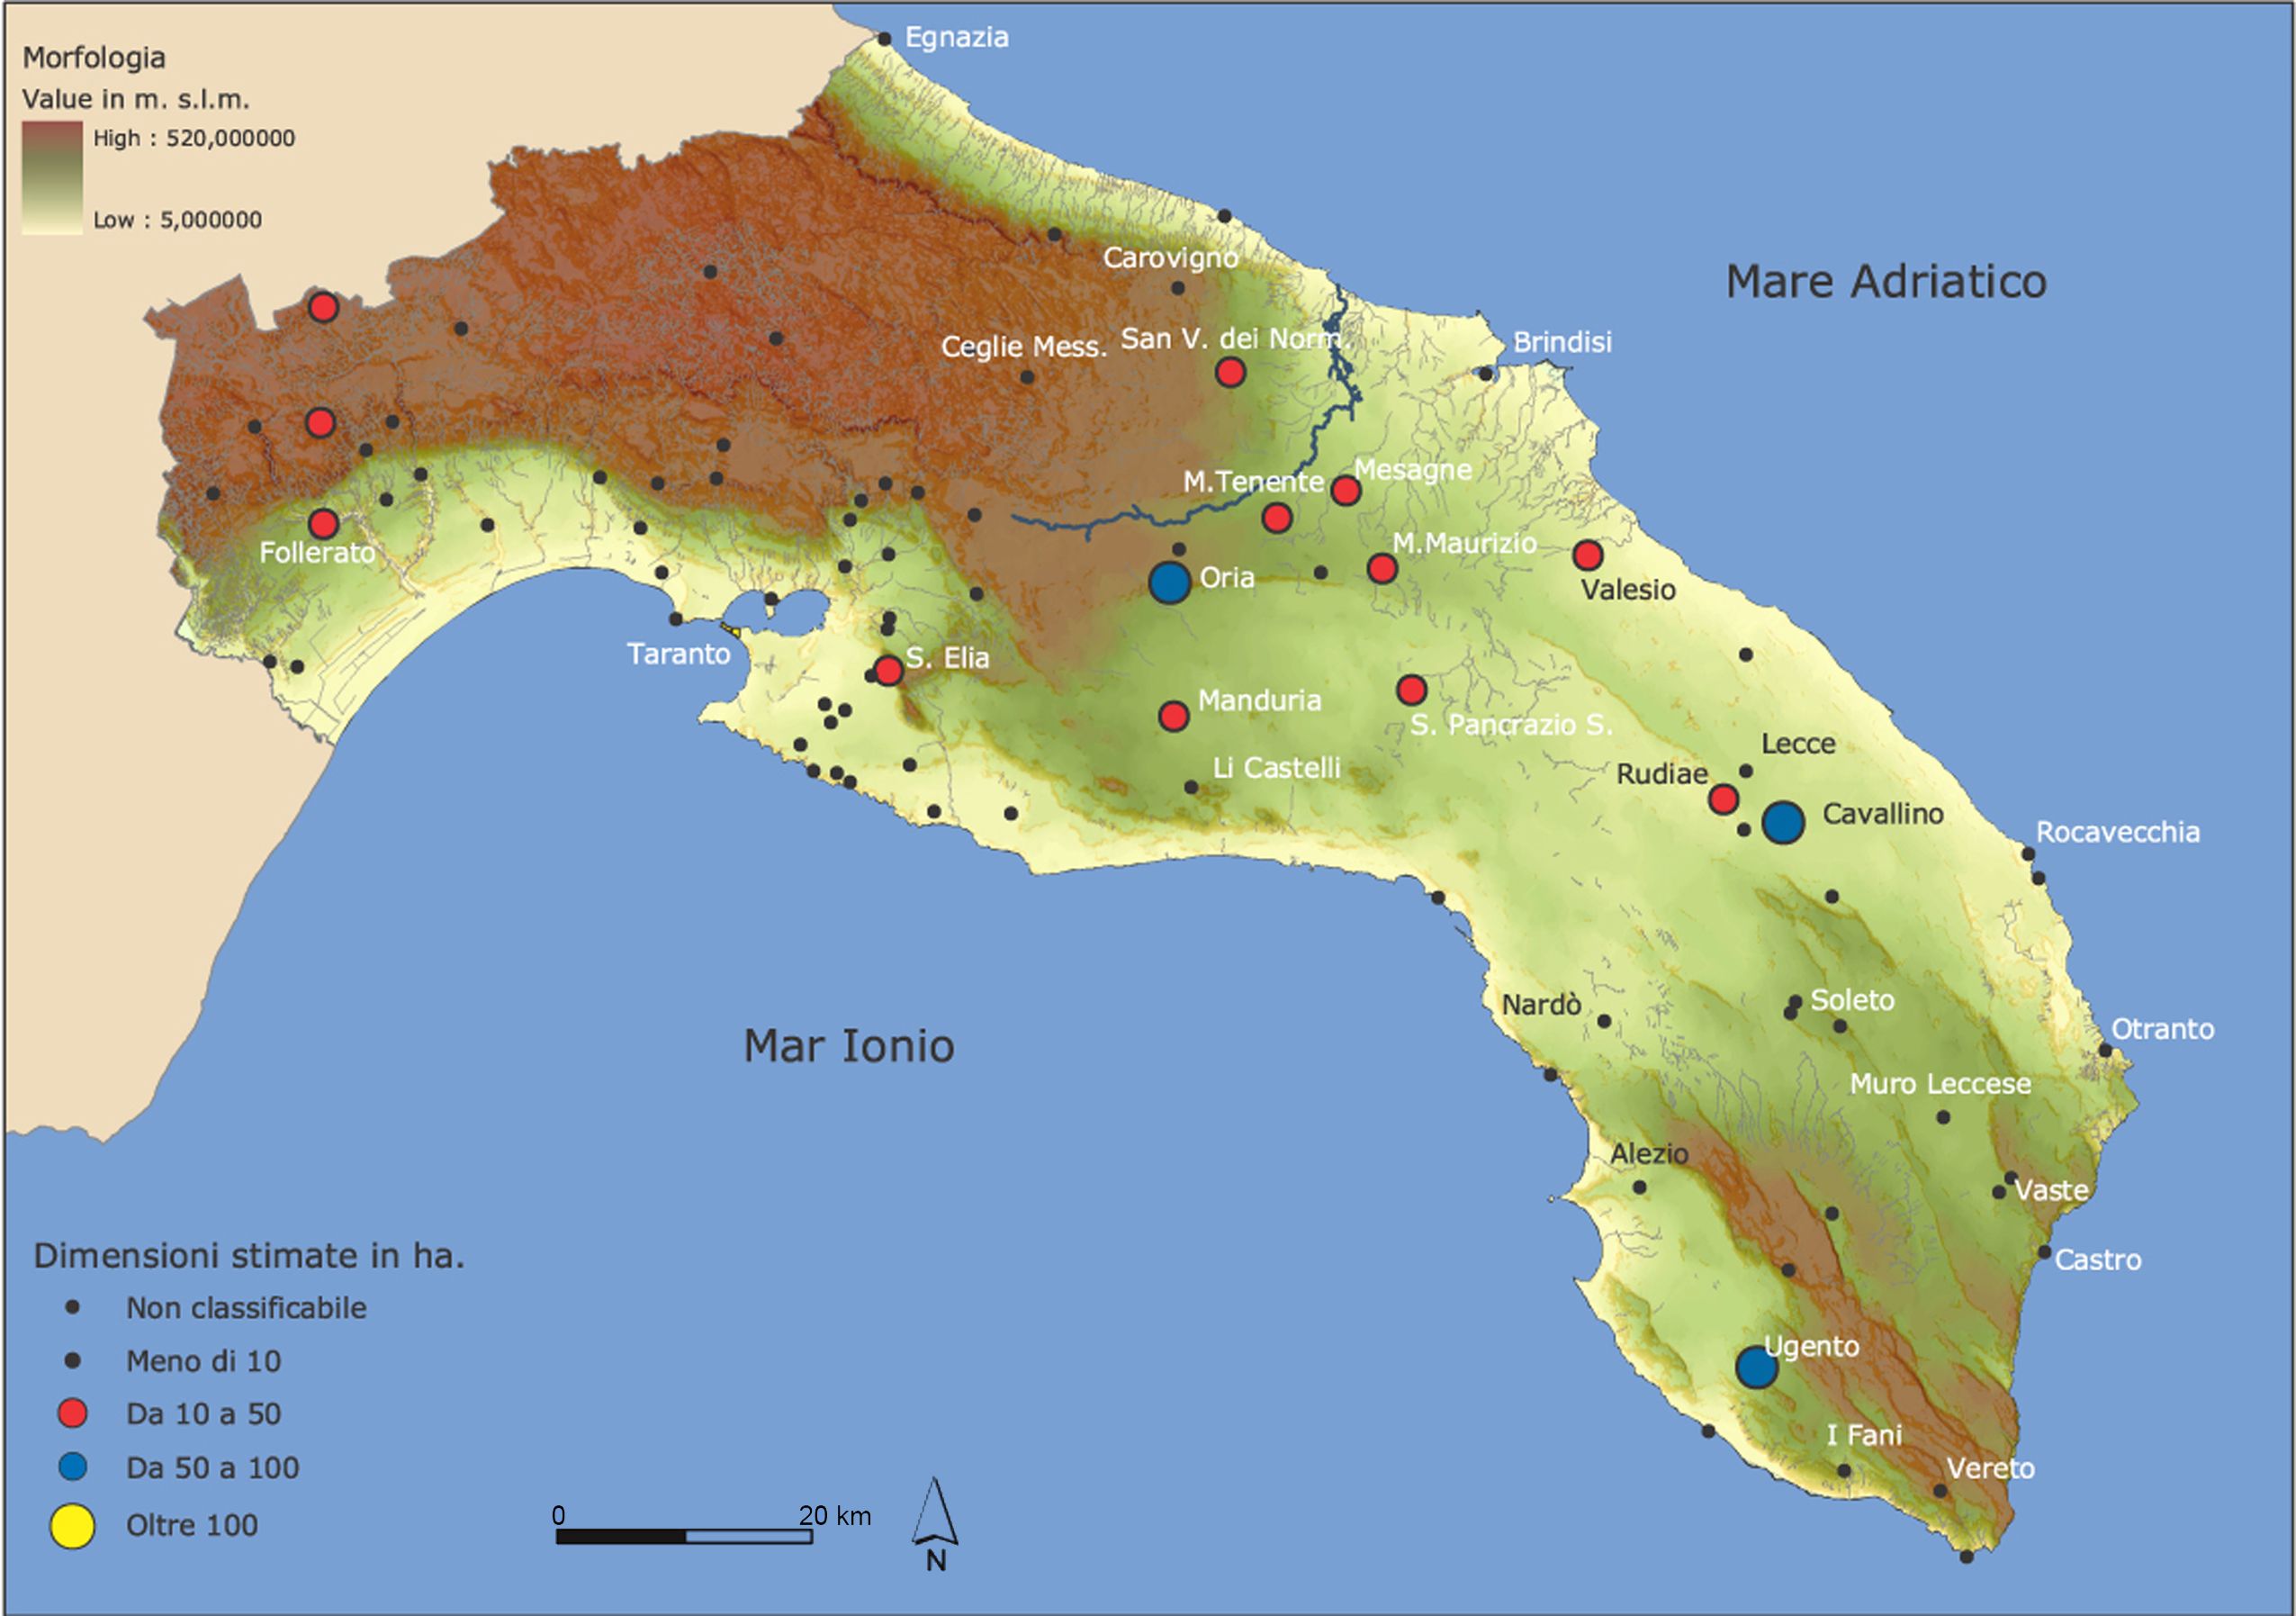 La mappa dei messapi presenti in Puglia